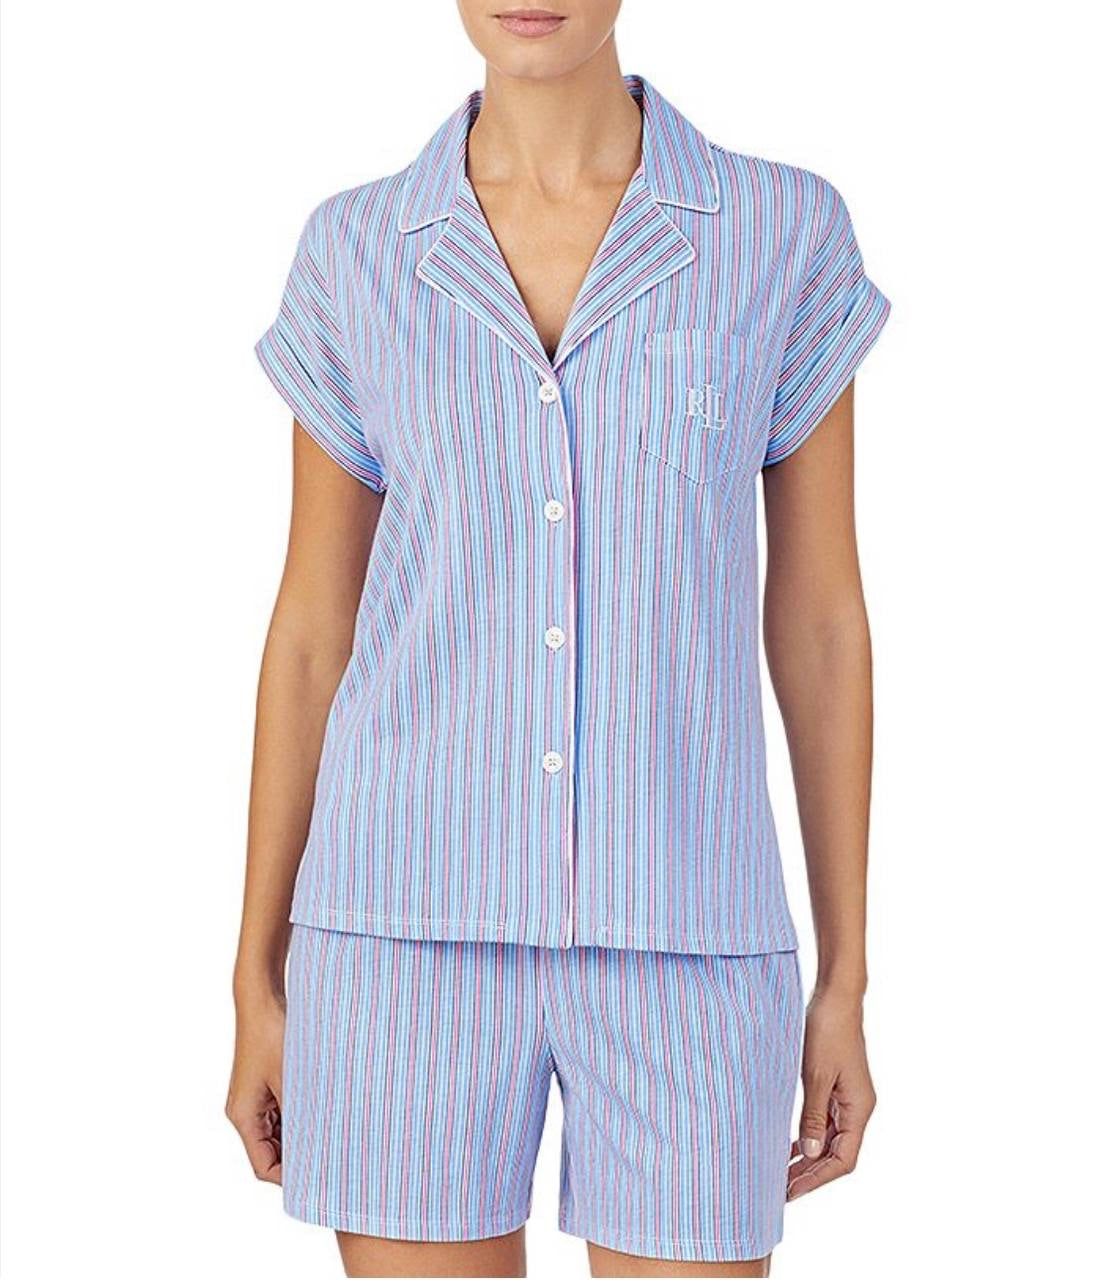 Ralph Lauren has pajama set